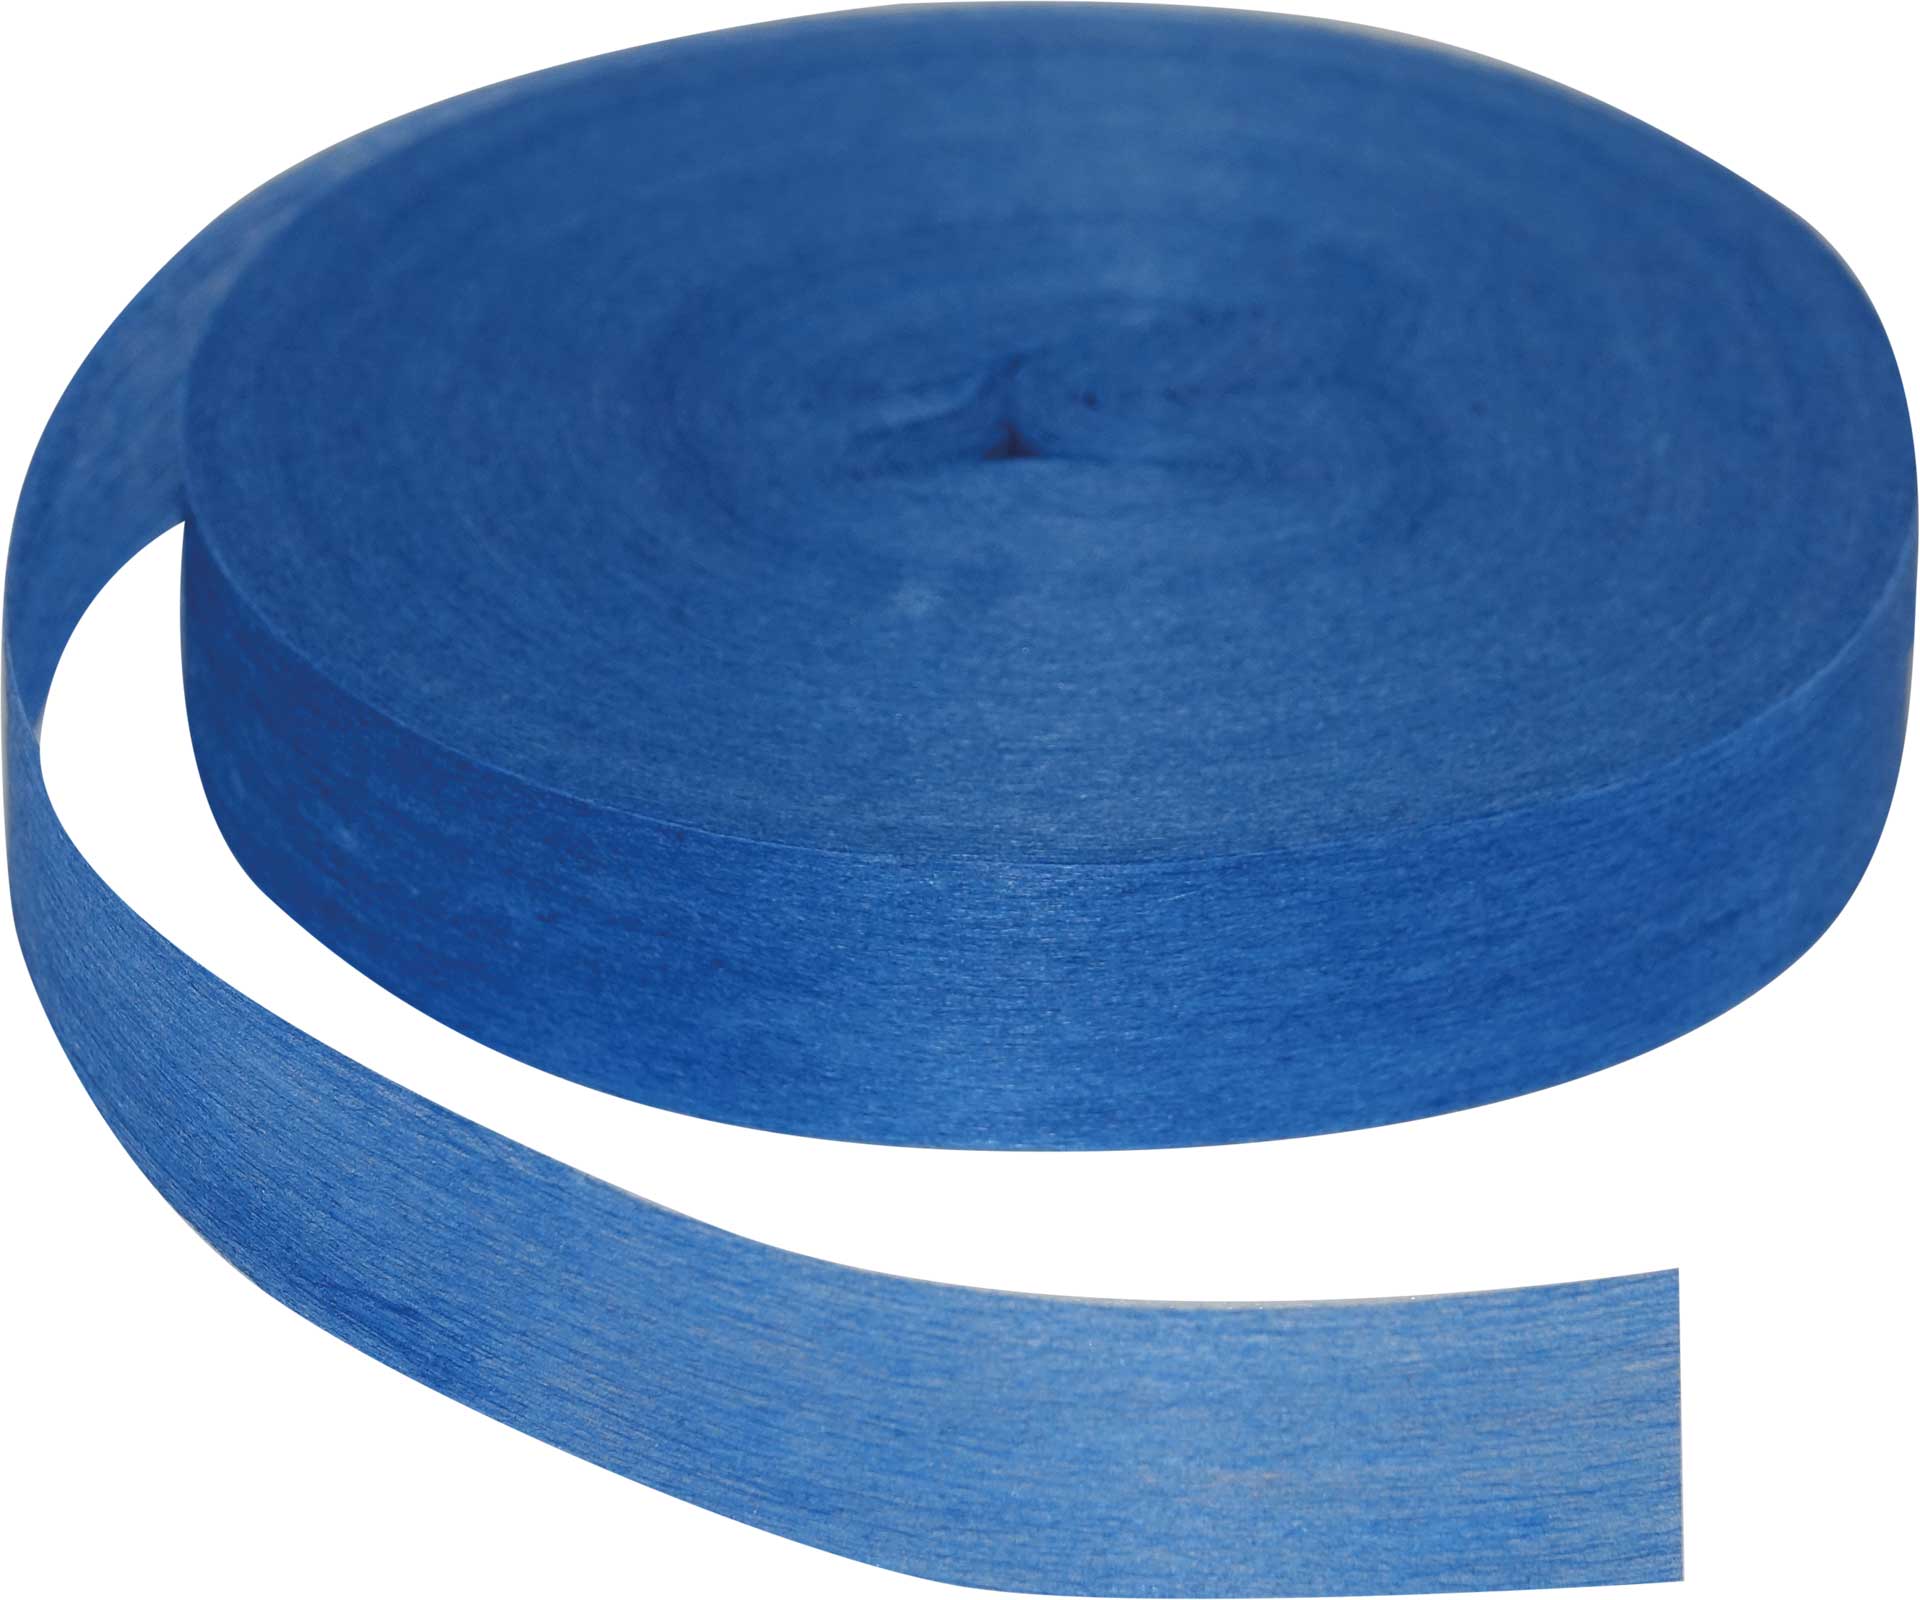 Robbe Modellsport Rubans pour Wingo 2 dans les couleurs bleu env. 75m